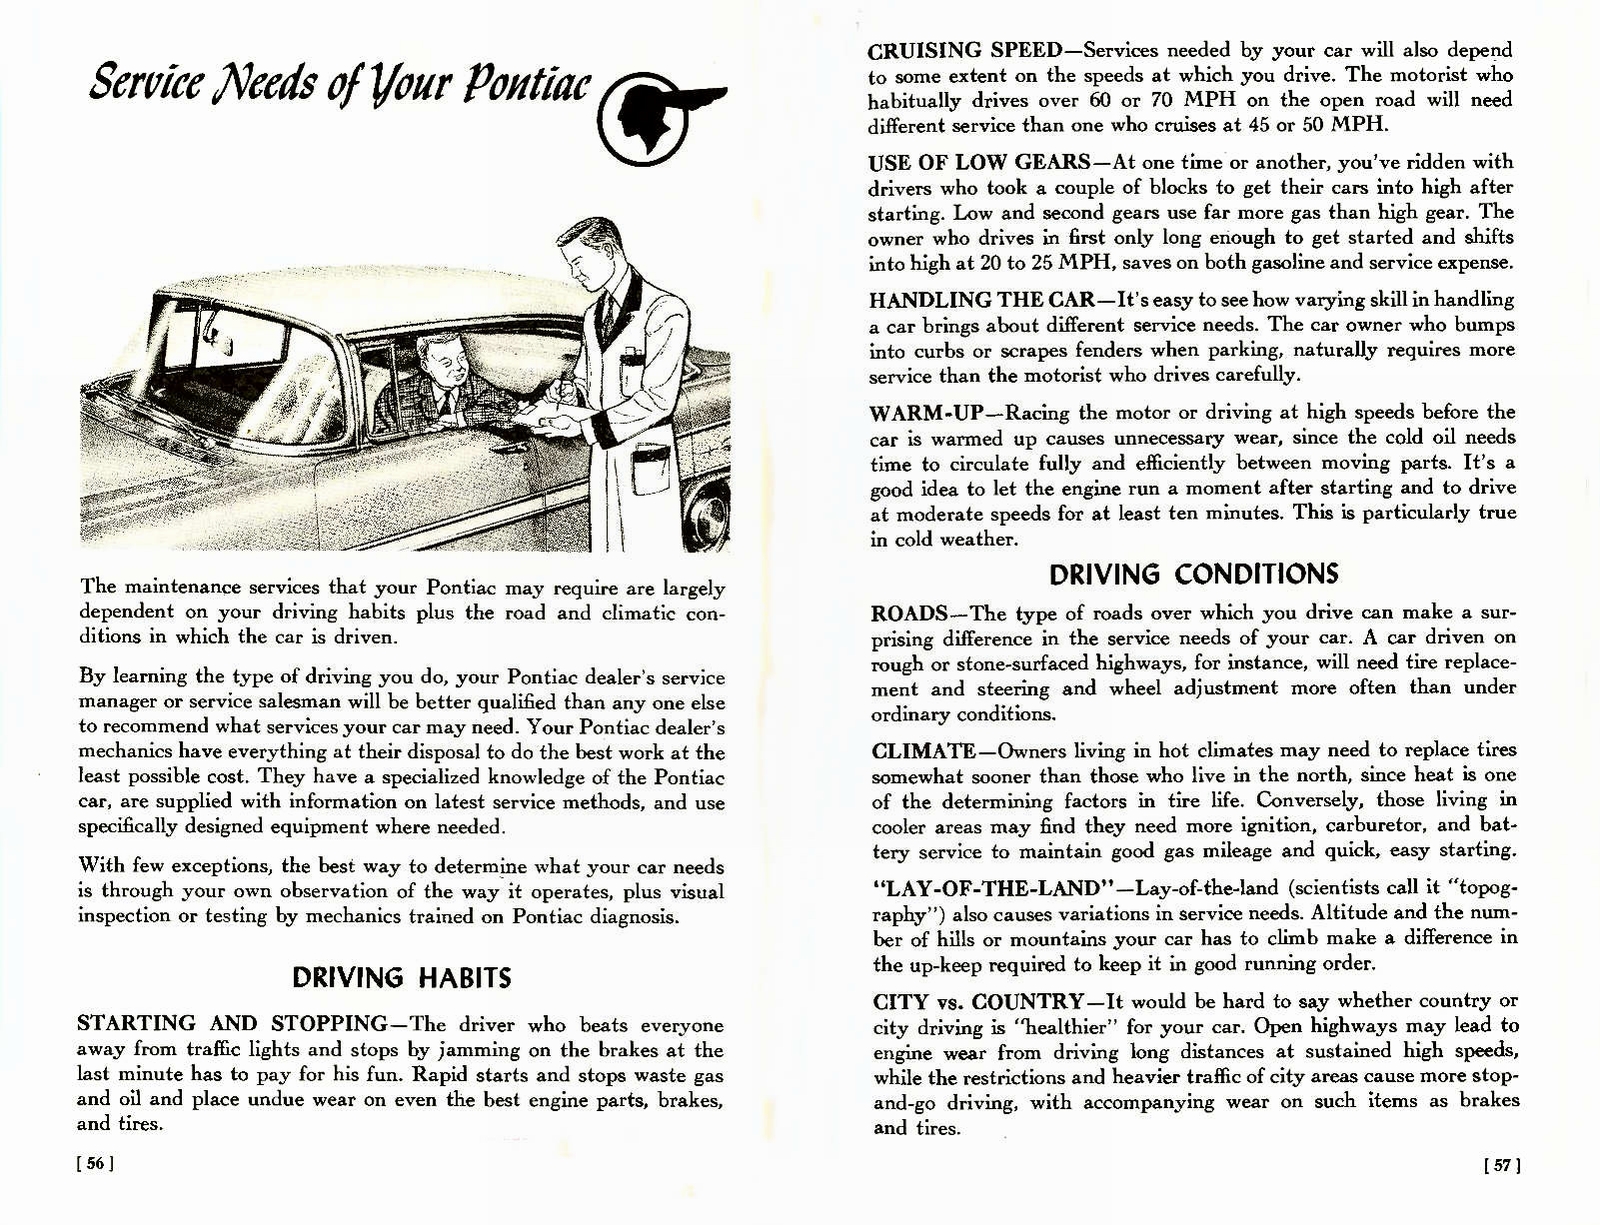 n_1957 Pontiac Owners Guide-56-57.jpg